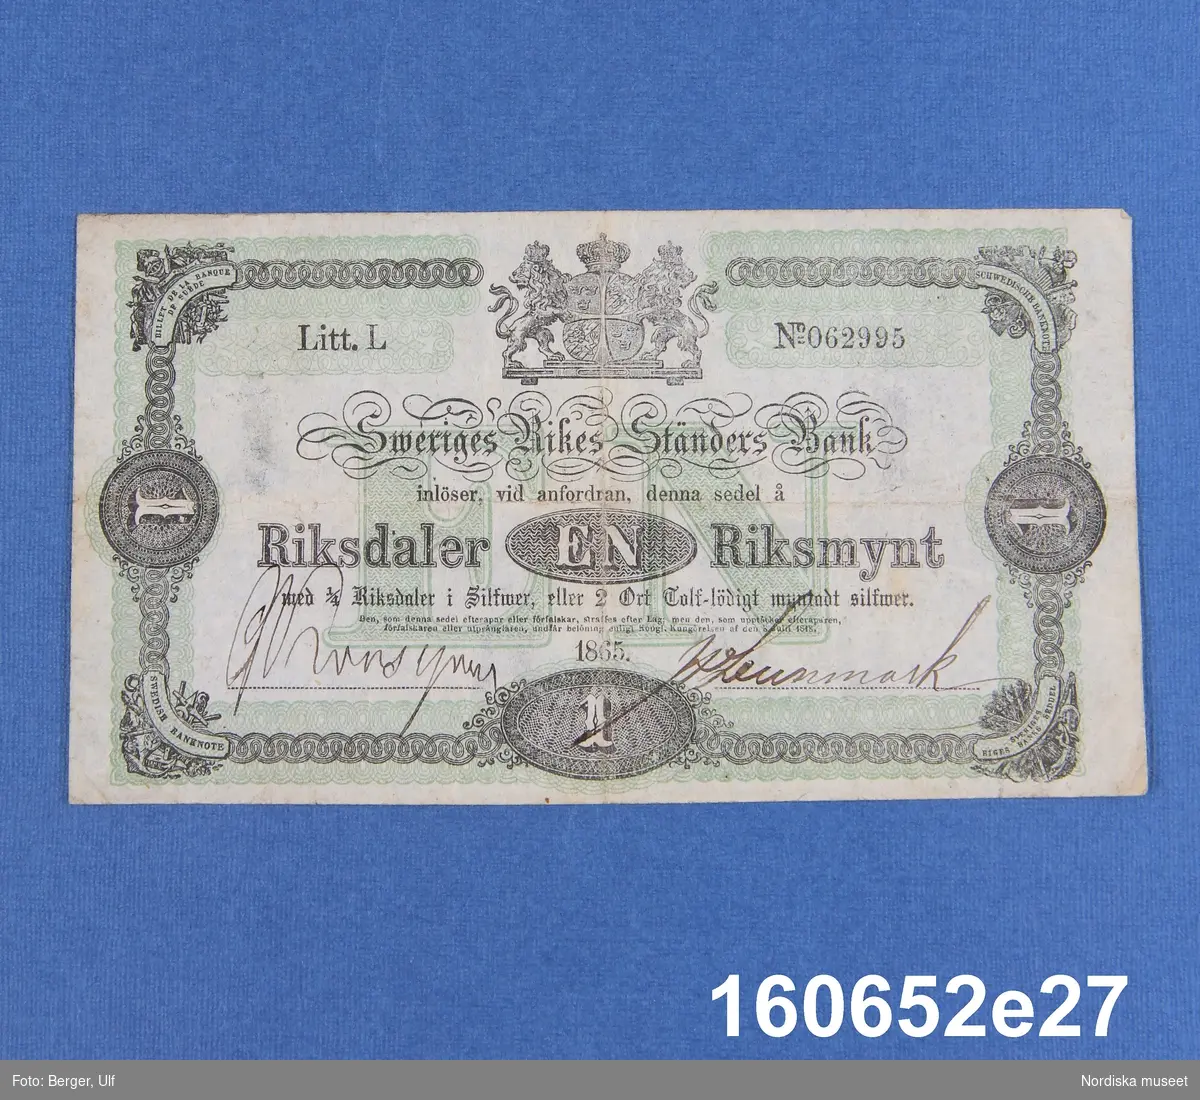 Sveriges Rikes Ständers Bank, 1 riksdaler riksmynt. Daterad 1865, litt L nr 062995.